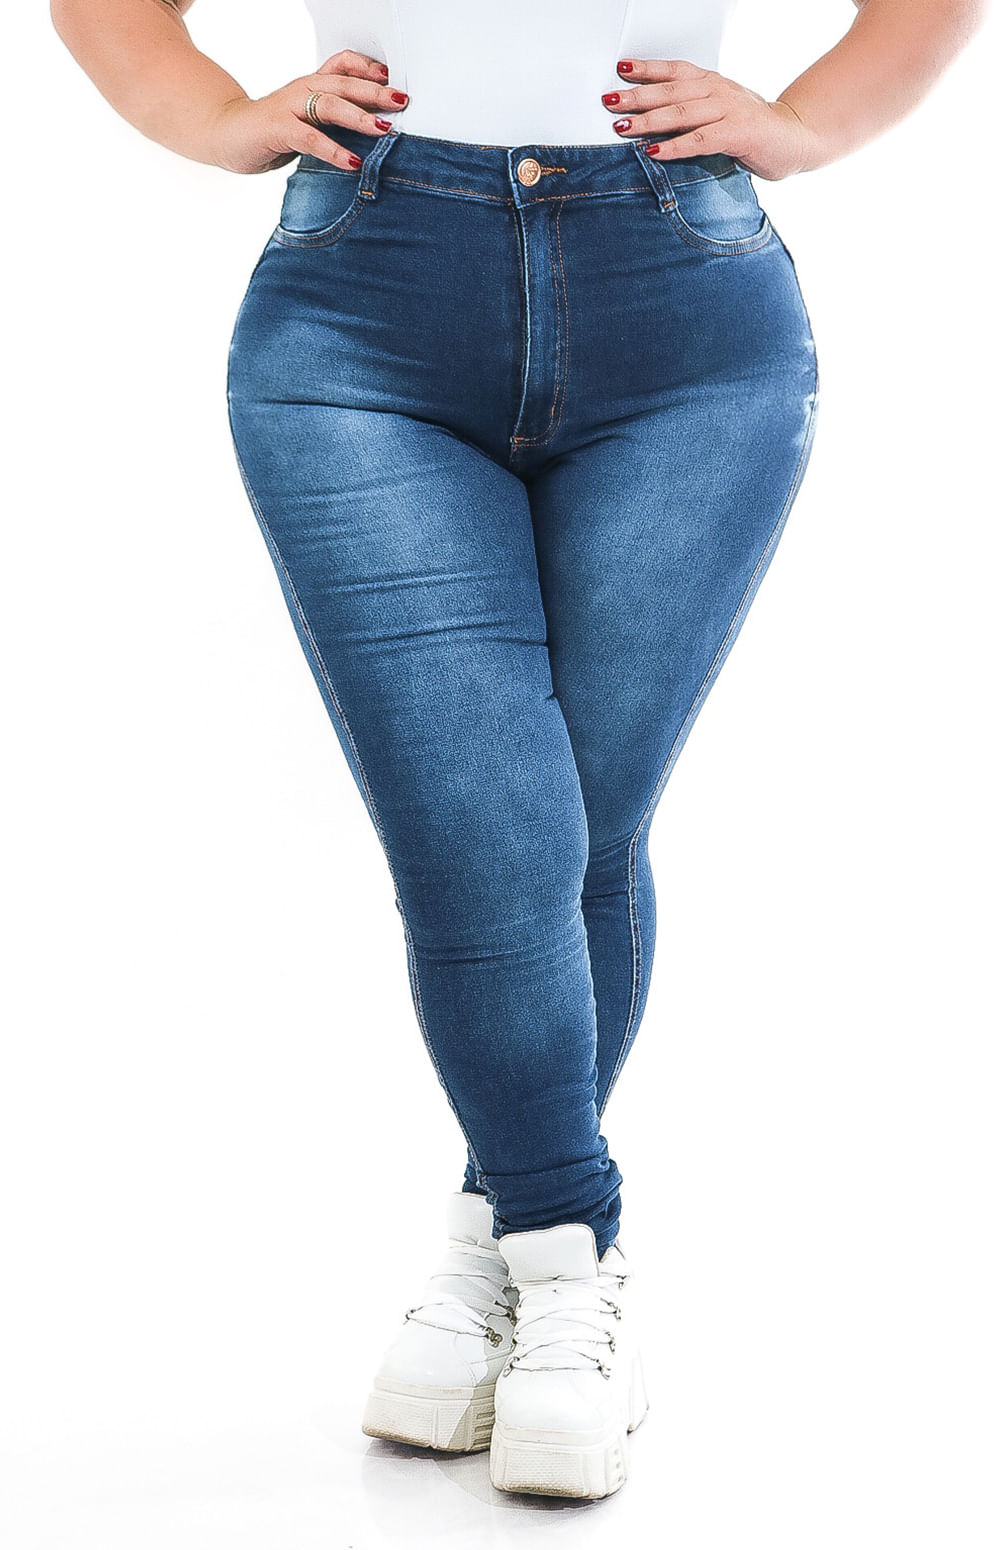 Calça Jeans Plus Size Skinny com elastano tamanhos 46 ao 60 (1003)